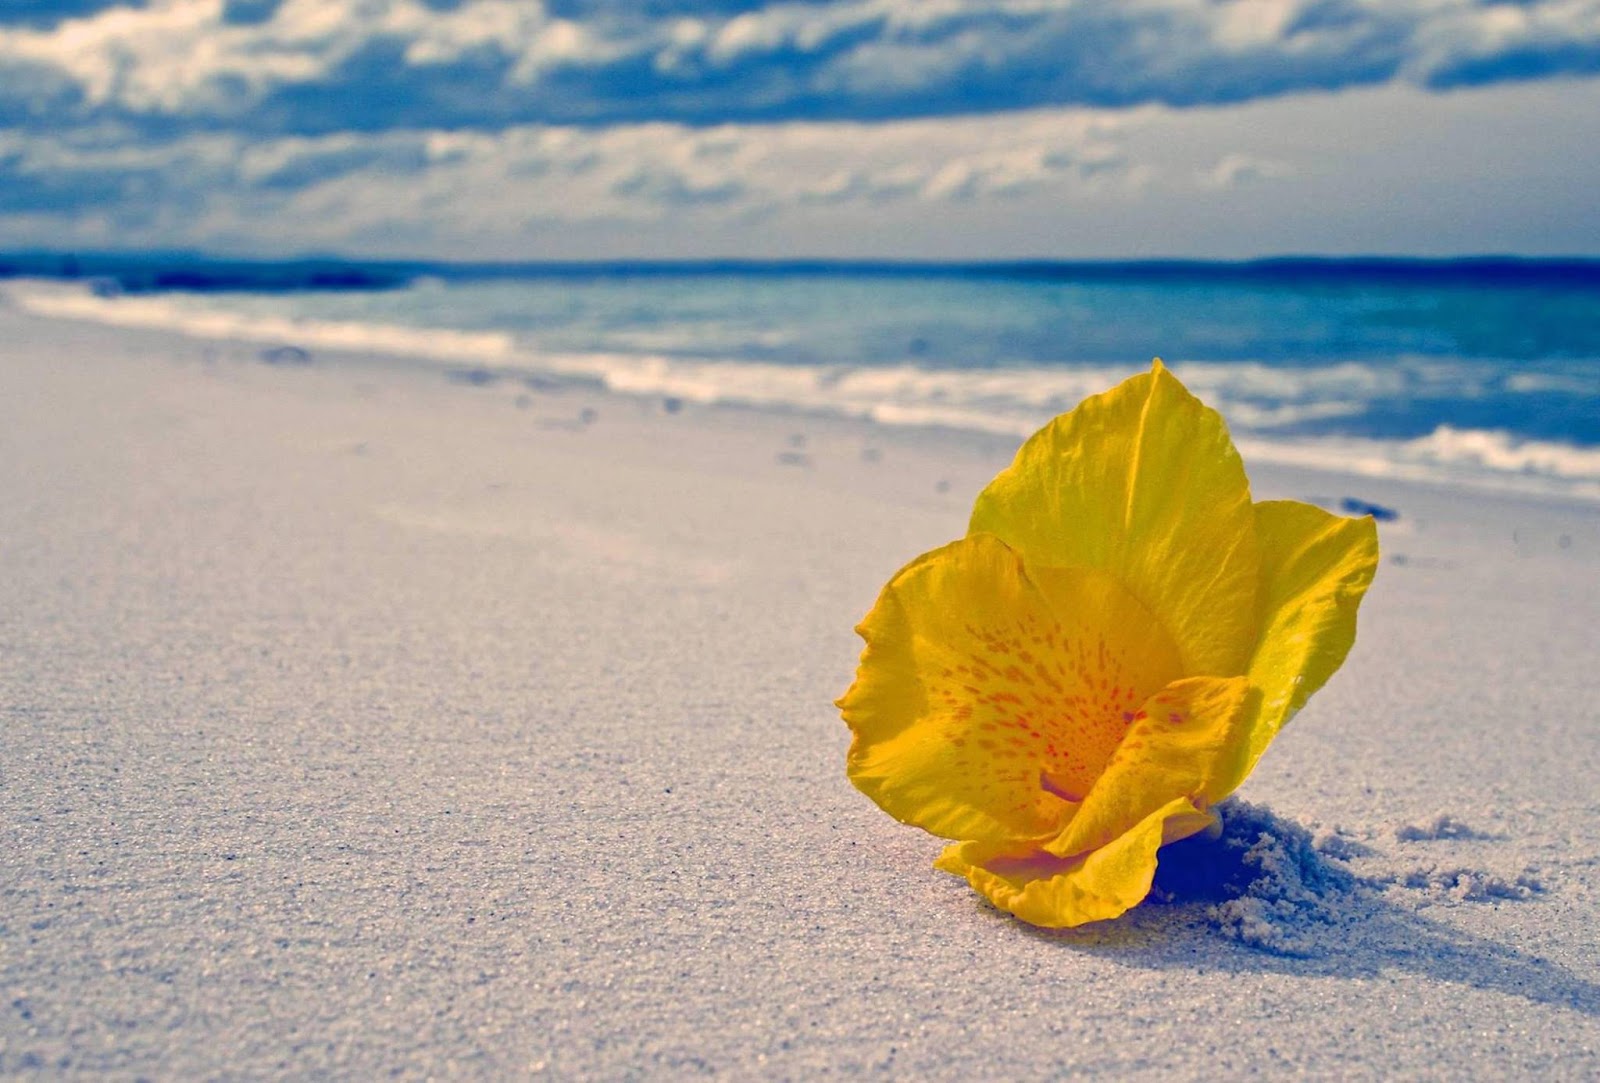 Море пляж цветы